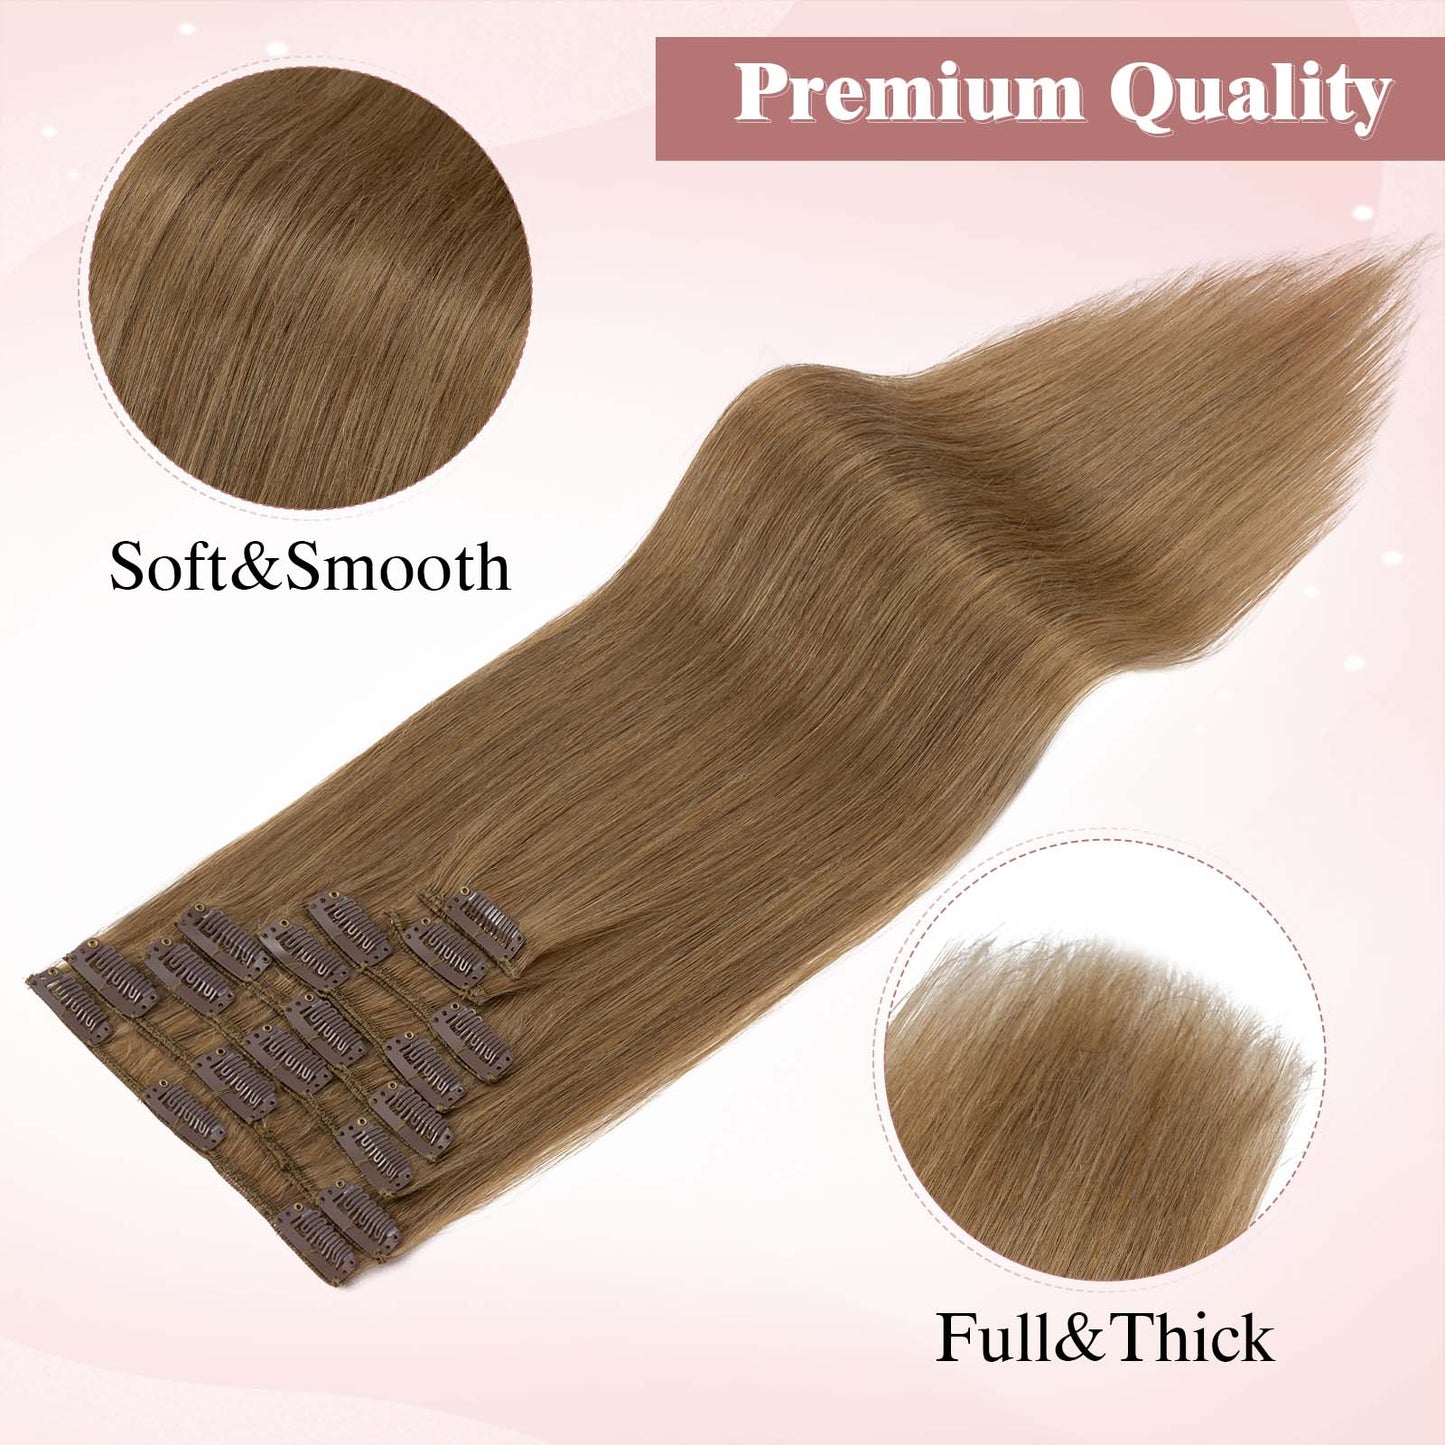 SEGOHAIR Clip In Hair Extensions Real Human Hair Light Weight Dark Linen segohair.com